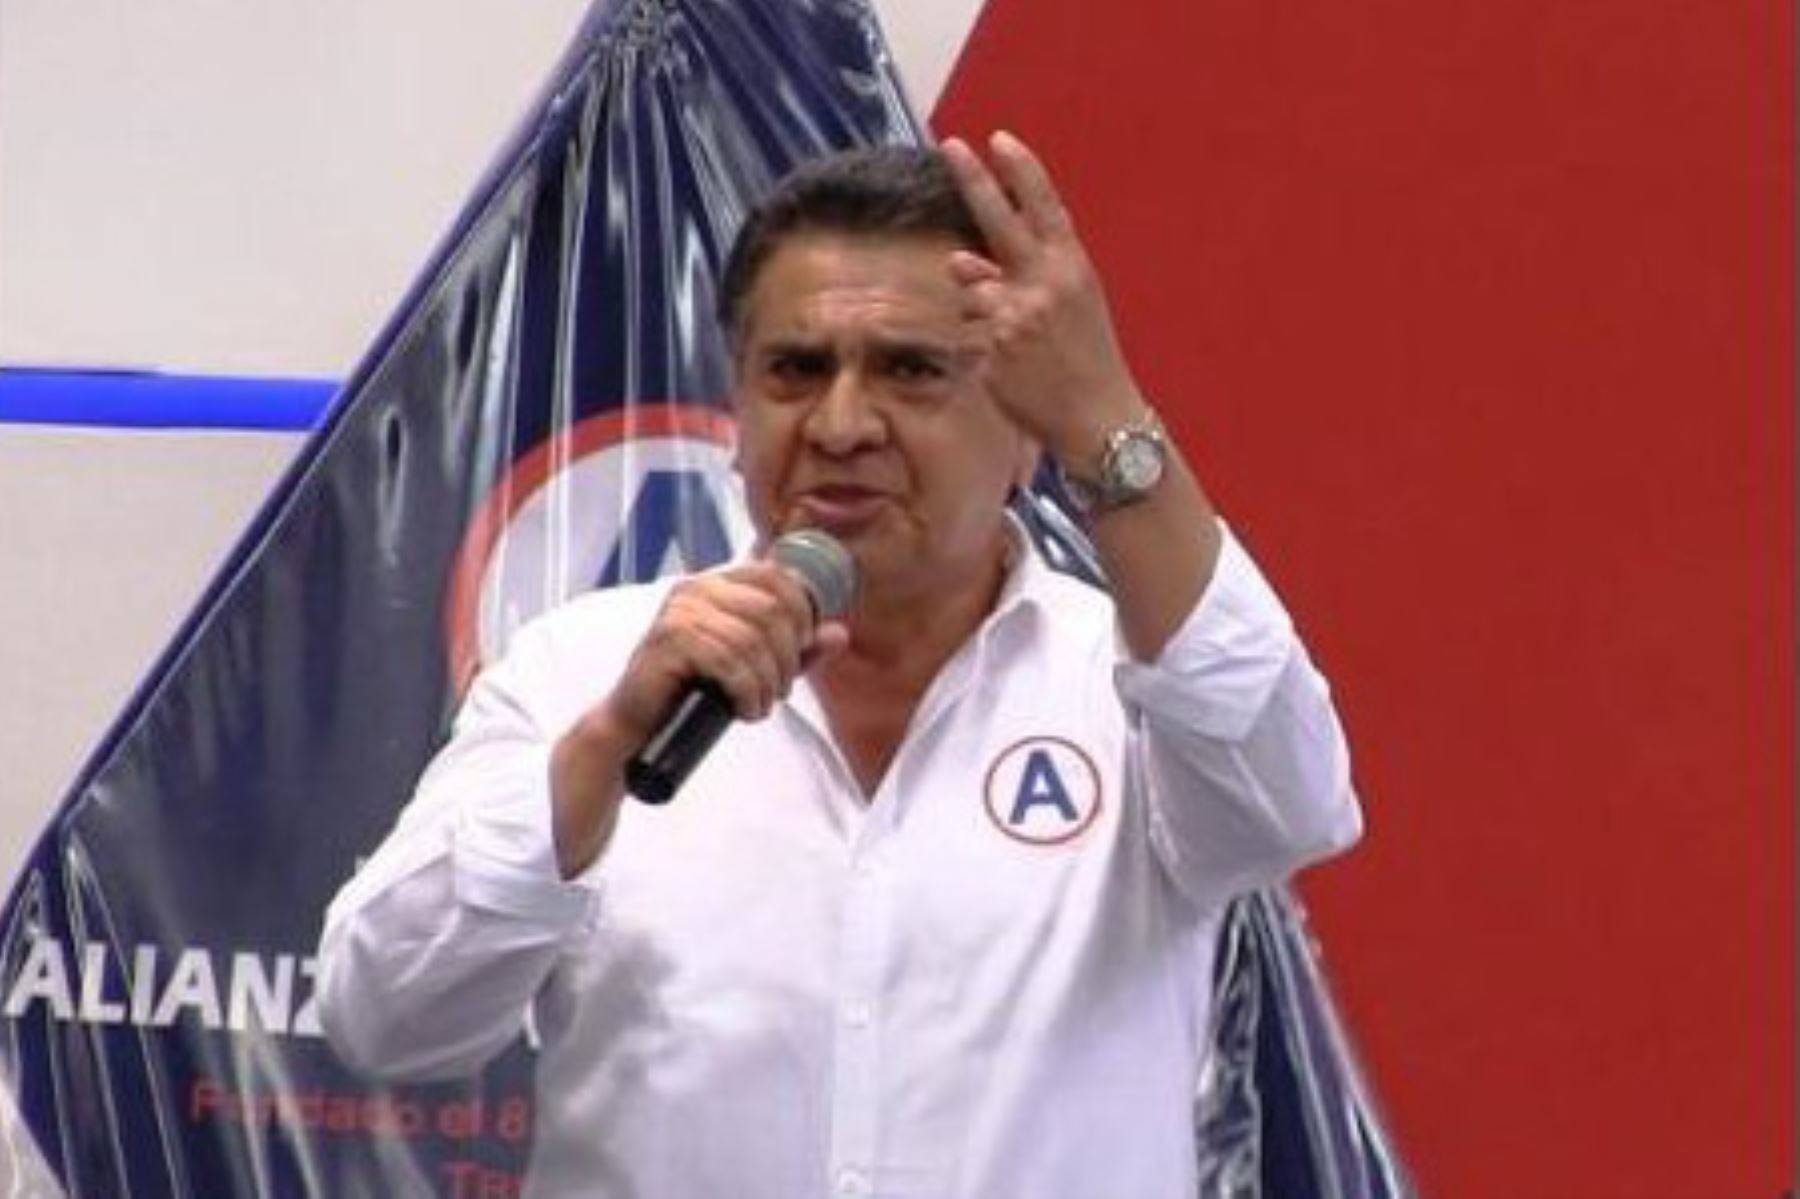 Manuel Llempén, candidato por el partido Alianza para el Progreso, es el virtual nuevo gobernador regional de La Libertad, al obtener el 32.2% de las preferencias electorales, según los sondeos efectuados “a boca de urna” efectuados por la encuestadora Ipsos.